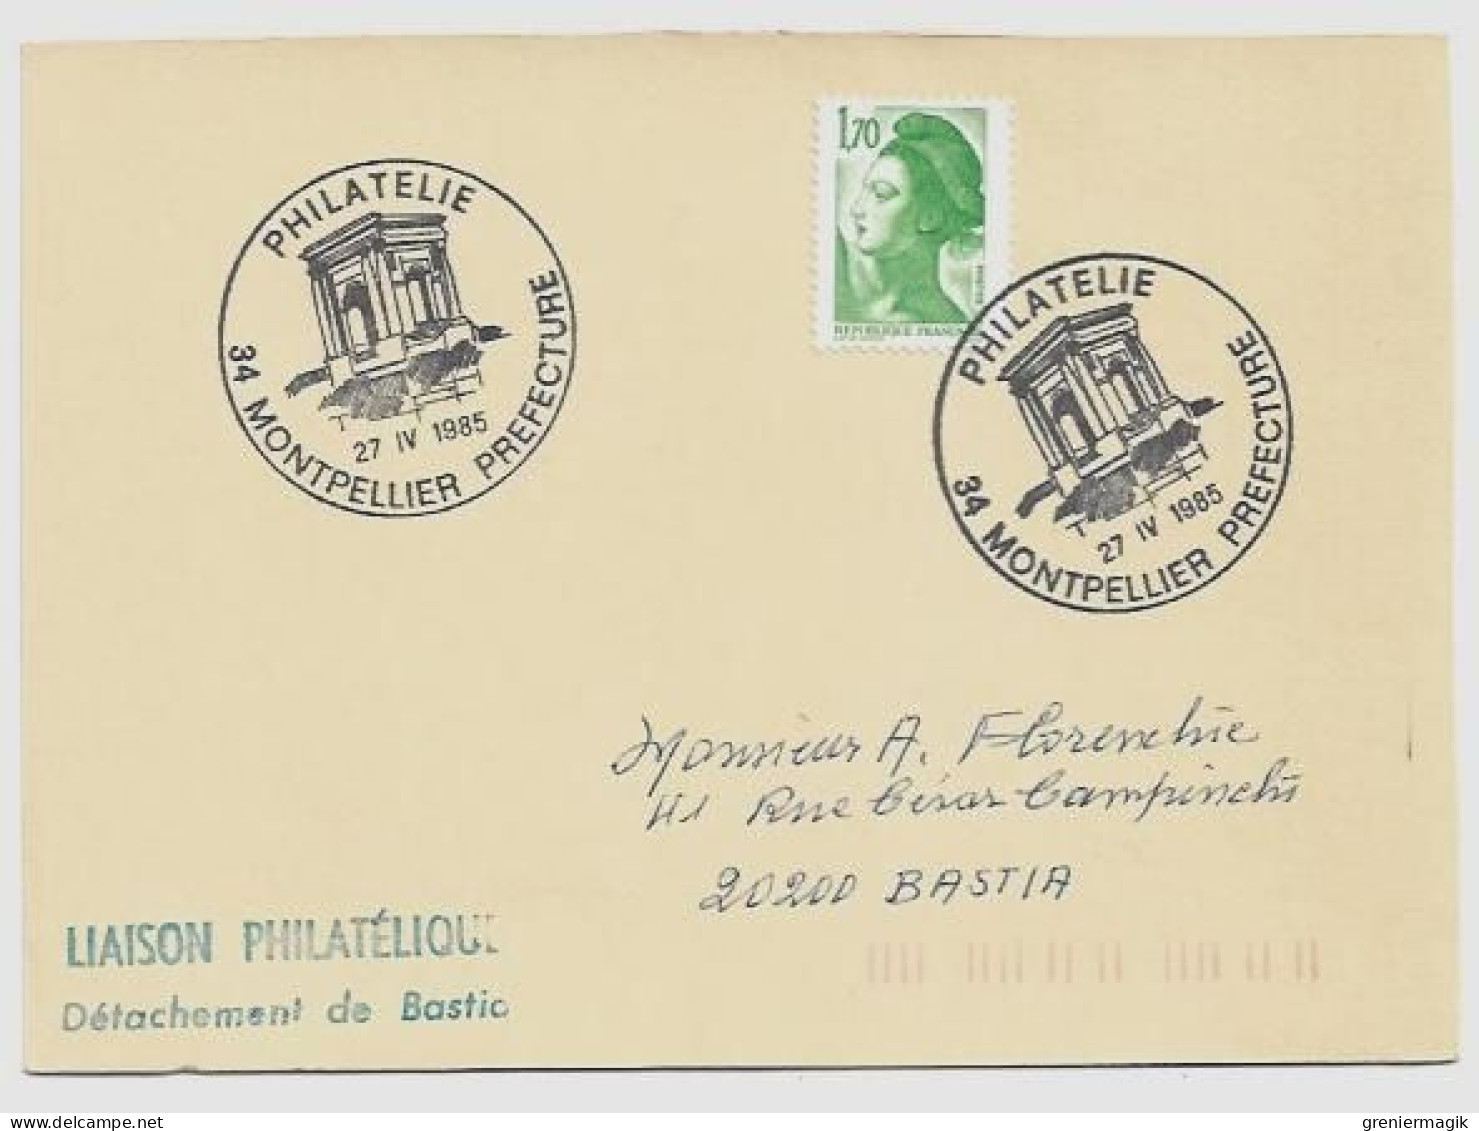 N°2318 Cachet Philatélie Montpellier Préfecture 27 IV 1985 - Liaison Philatélique Bastia - Liberté Gandon 1,70 Vert - Aushilfsstempel